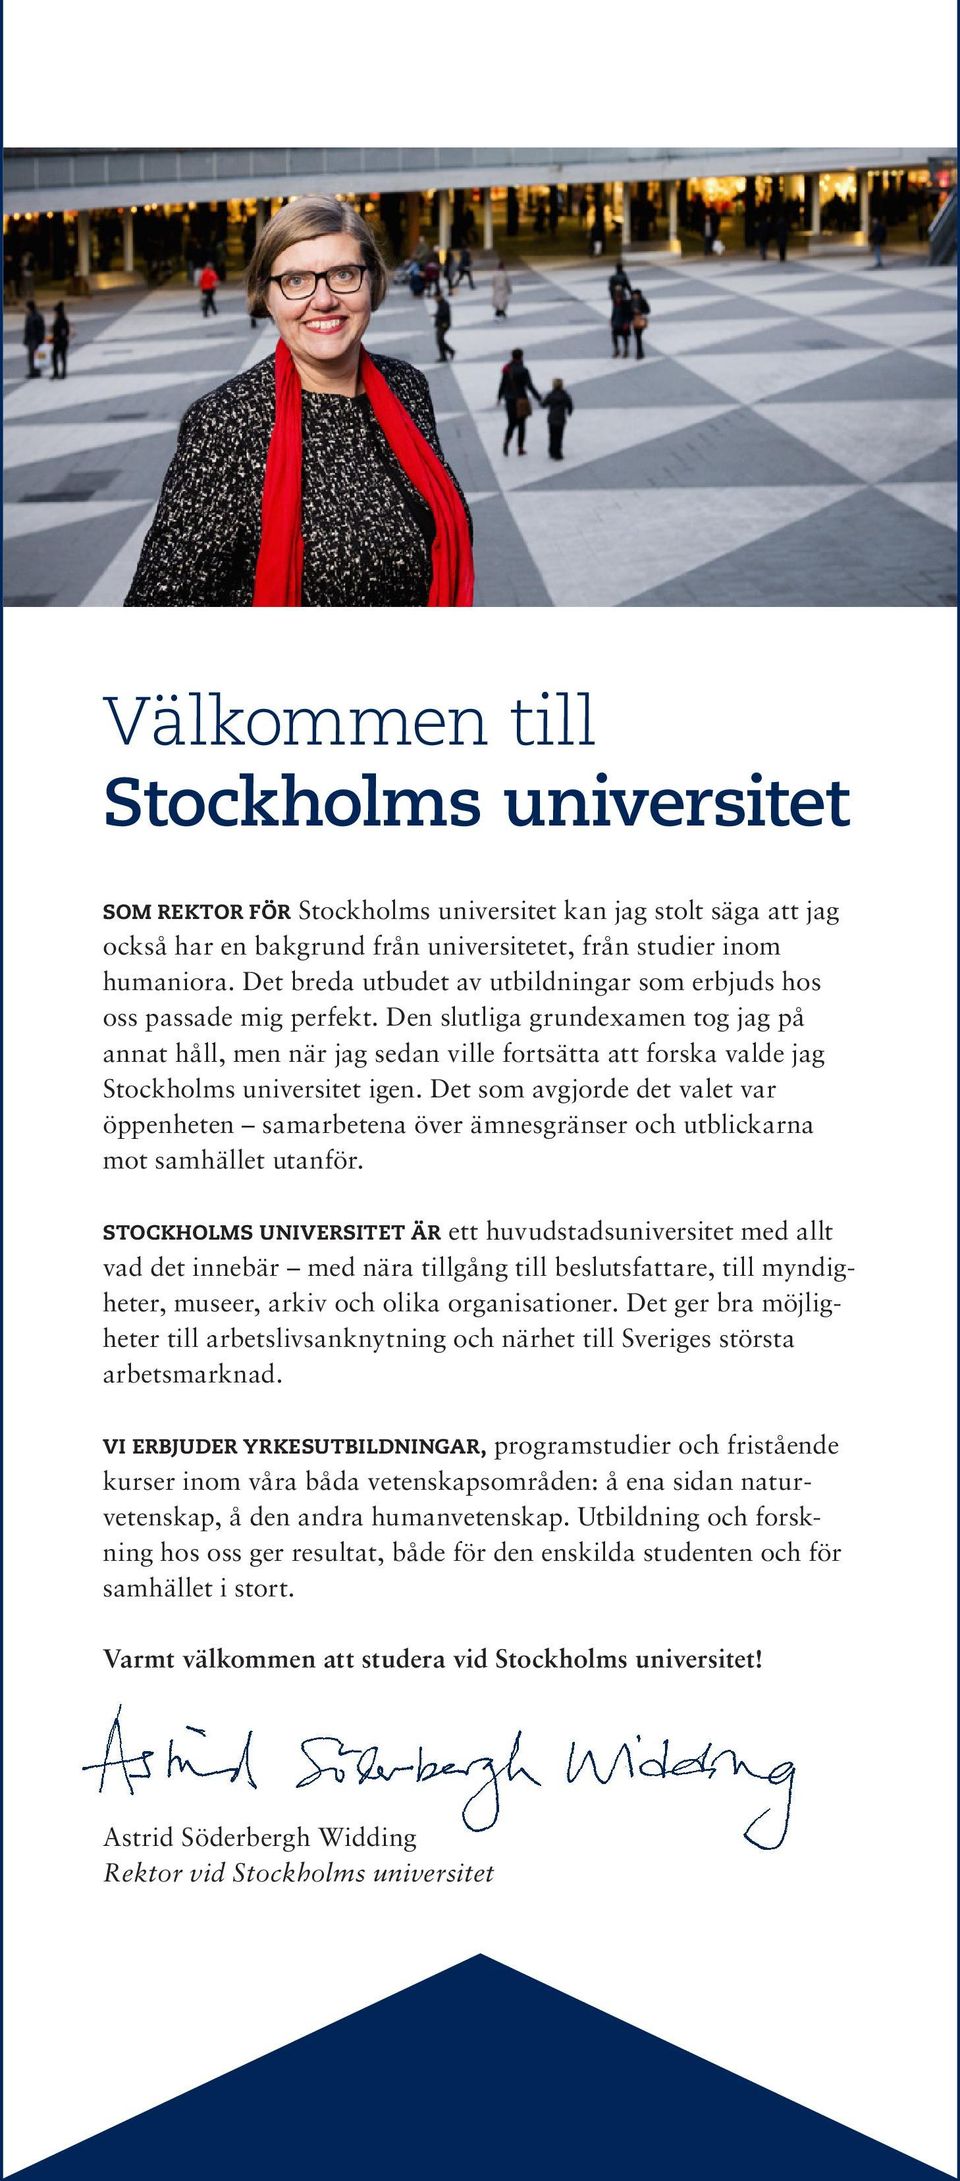 Den slutliga grundexamen tog jag på annat håll, men när jag sedan ville fortsätta att forska valde jag Stockholms universitet igen.